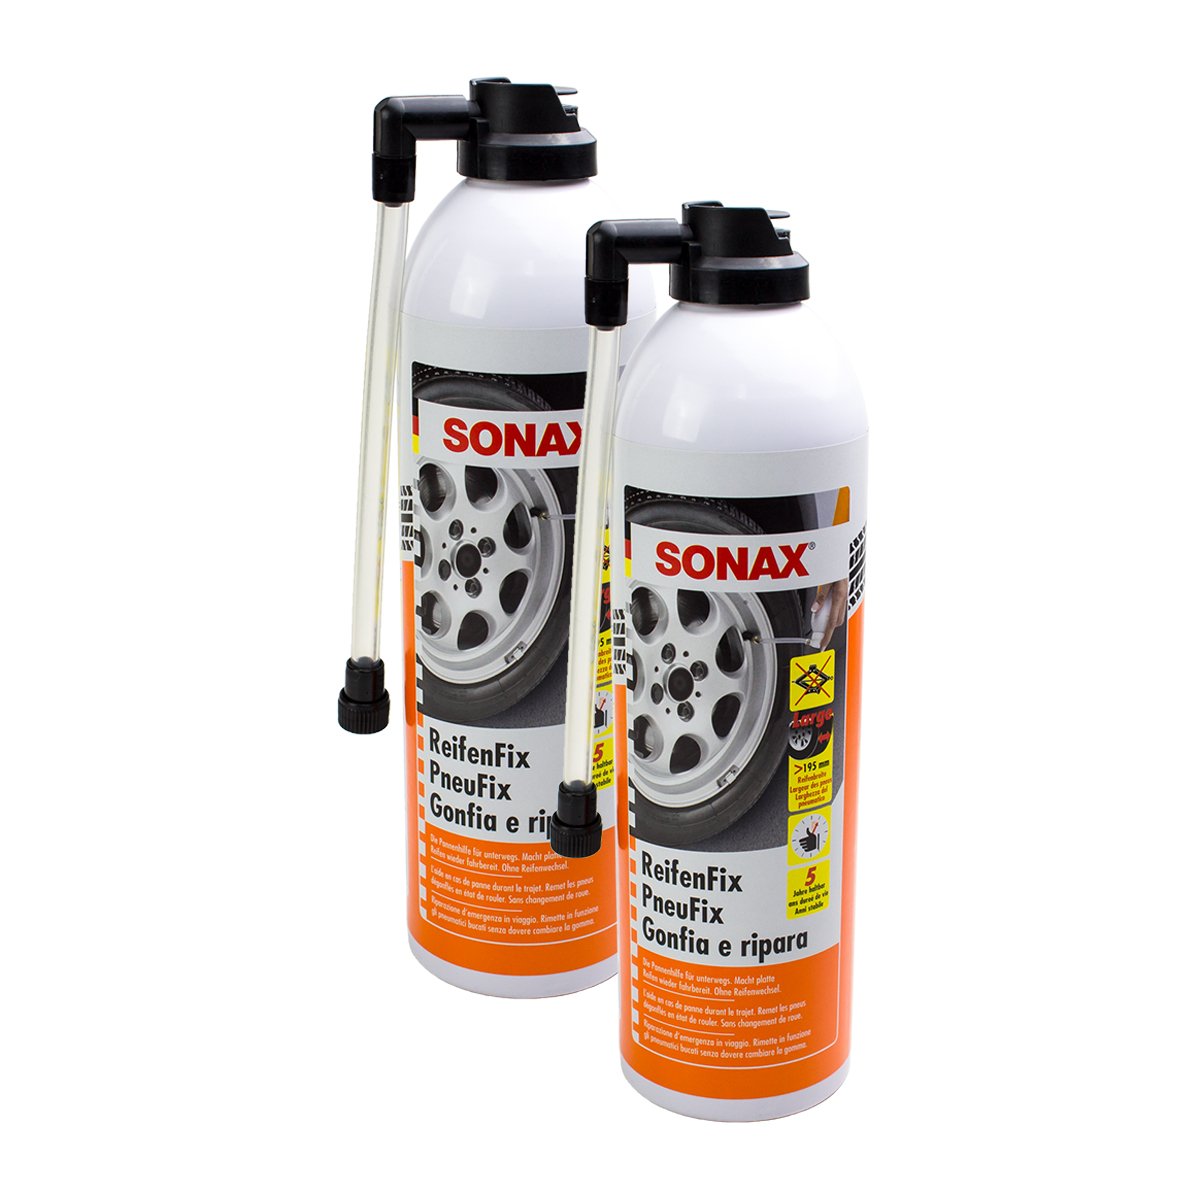 SONAX 2X 04323000 ReifenFix Pannenhilfe Reifenwechsel 400ml von SONAX